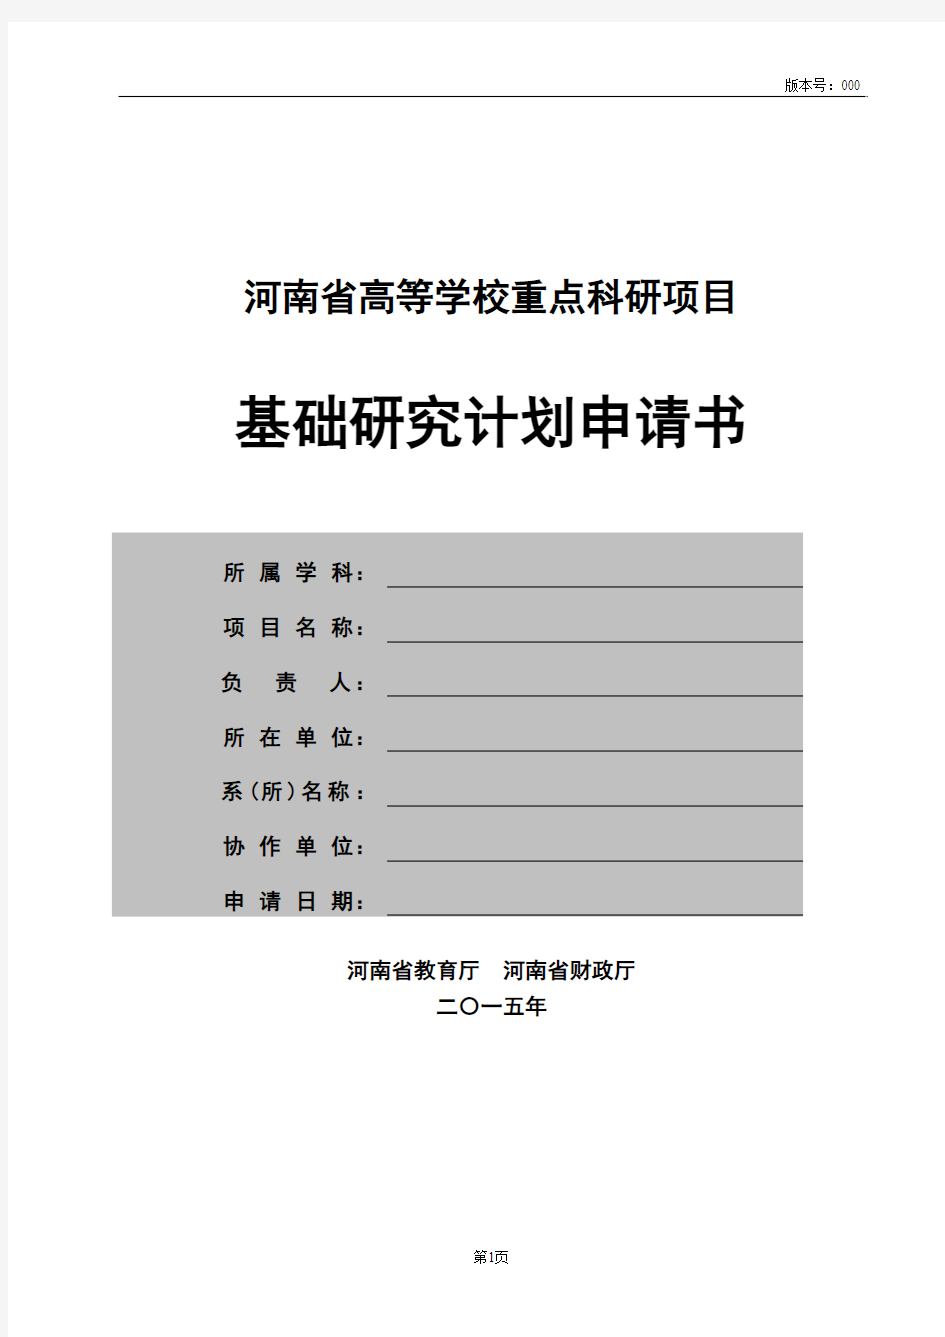 河南省高等学校重点科研项目基础研究计划申请书(2015版)